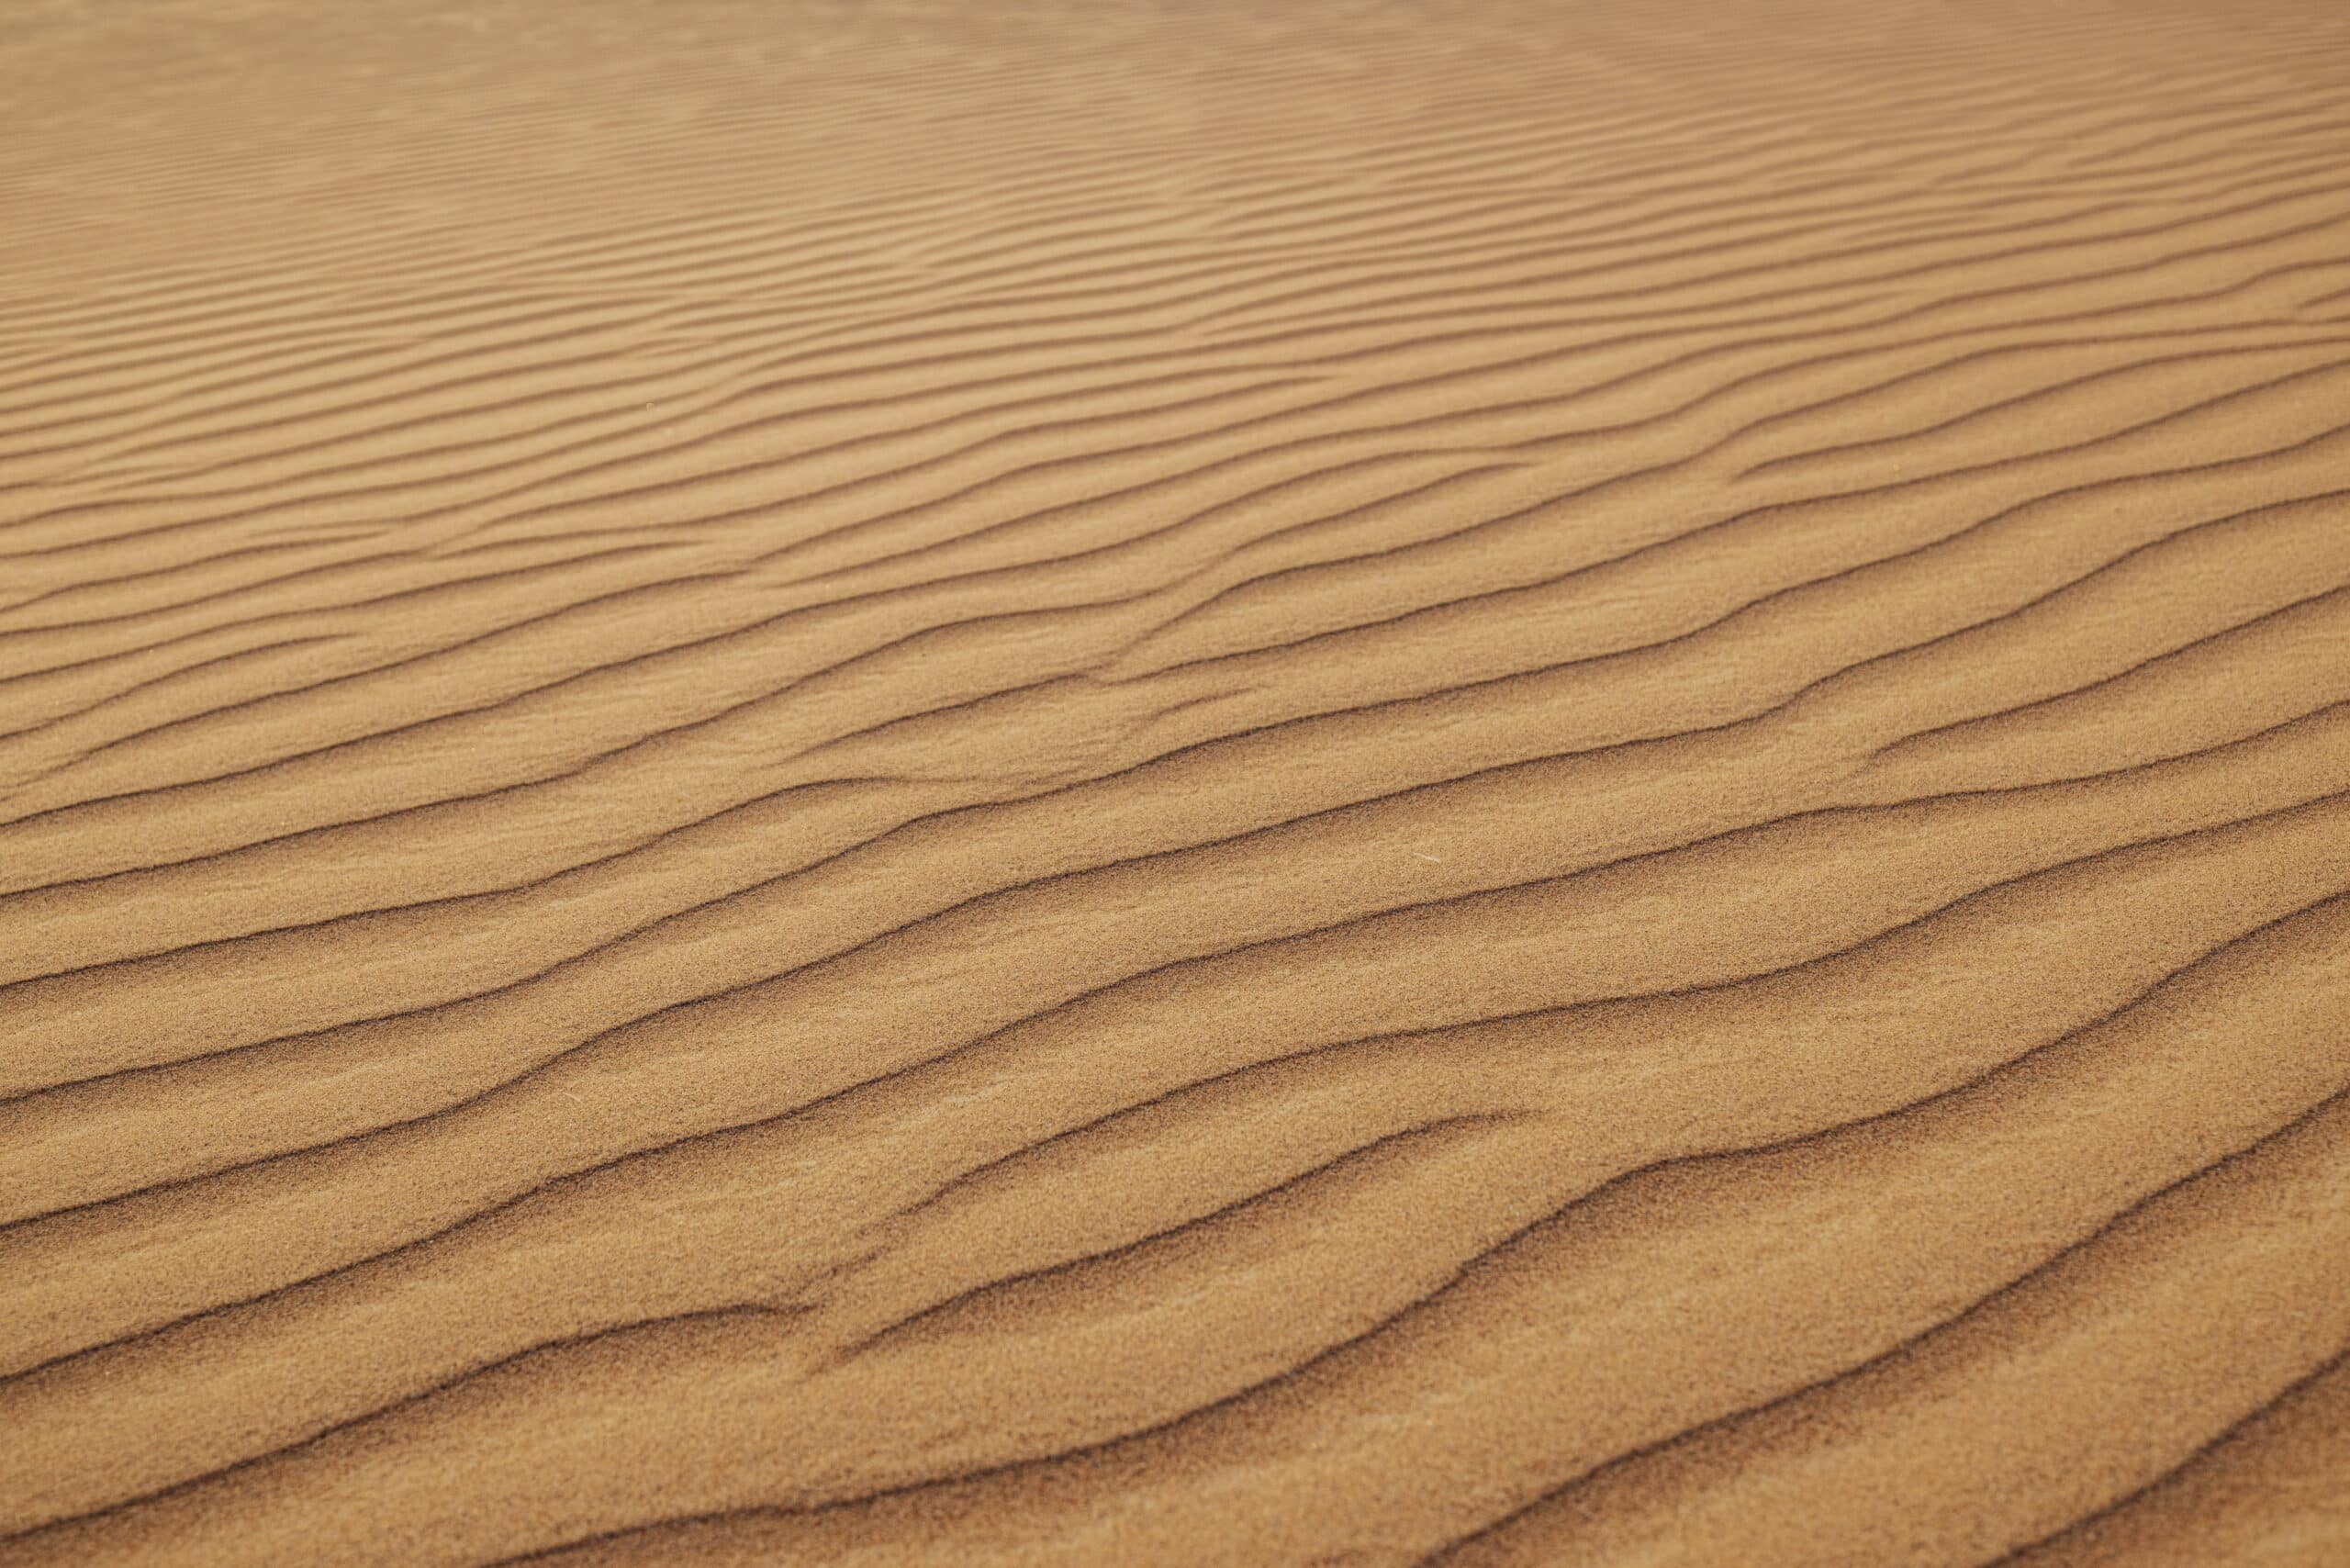 Nahaufnahme von gewellten Sanddünen mit natürlichem Wellenmuster, die die Textur und Details einer Wüstenlandschaft zeigen. © Fotografie Tomas Rodriguez